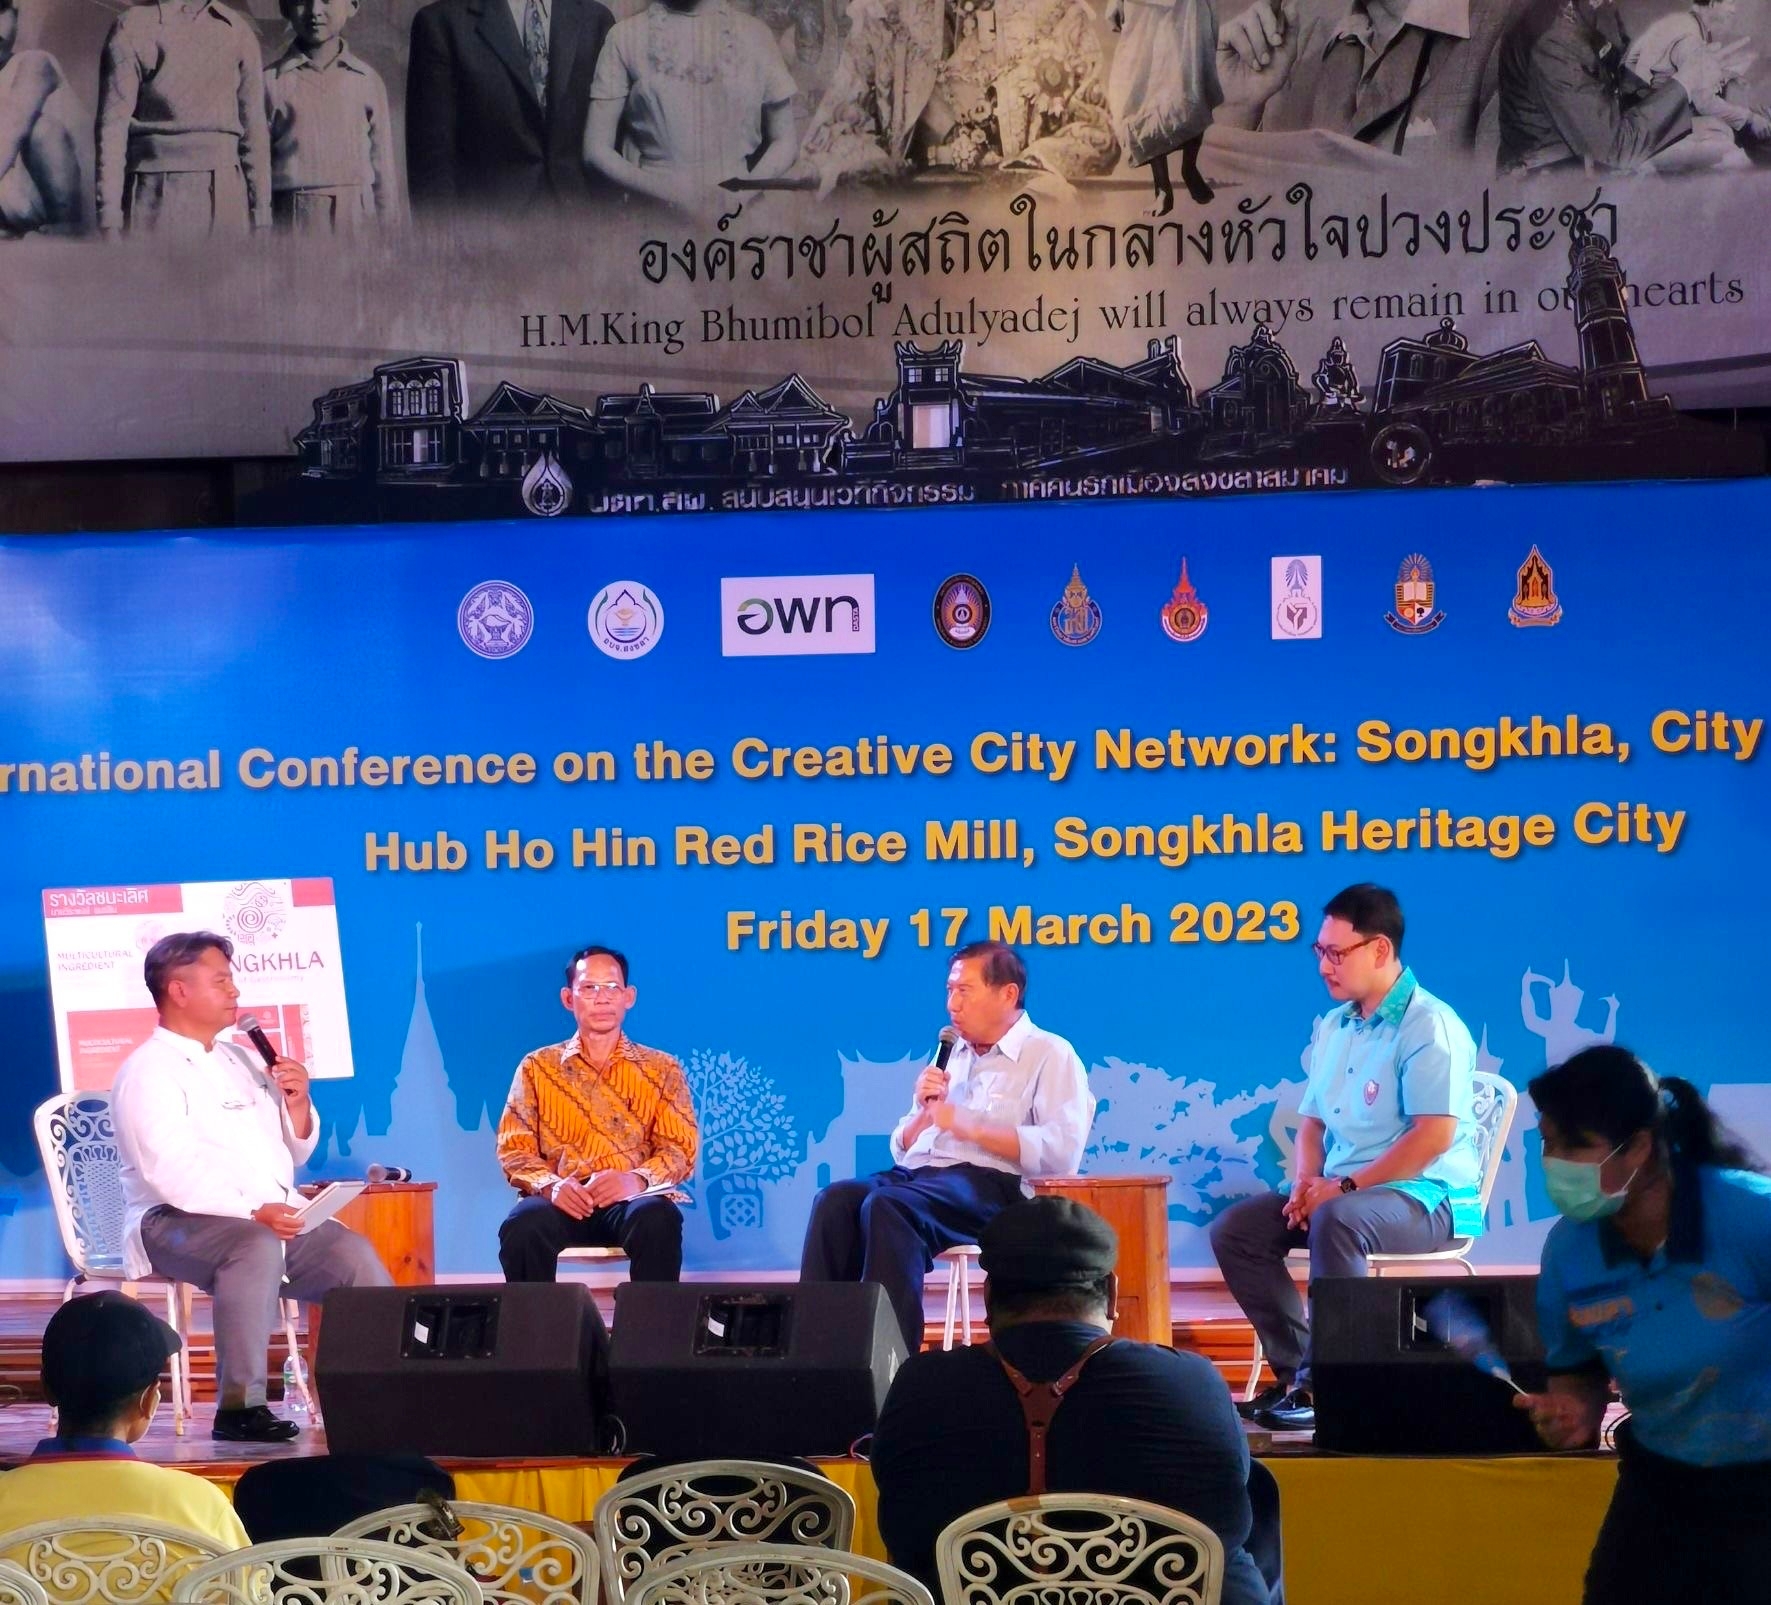 หอการค้าจังหวัดสงขลา ร่วมเสวนาเส้นทางสู่การเป็นเครือข่ายเมืองสร้างสรรค์มรดกโลกด้านอาหารของยูเนสโก Songkhla Gastronomy Tourism “A Creative Economy for the Community”